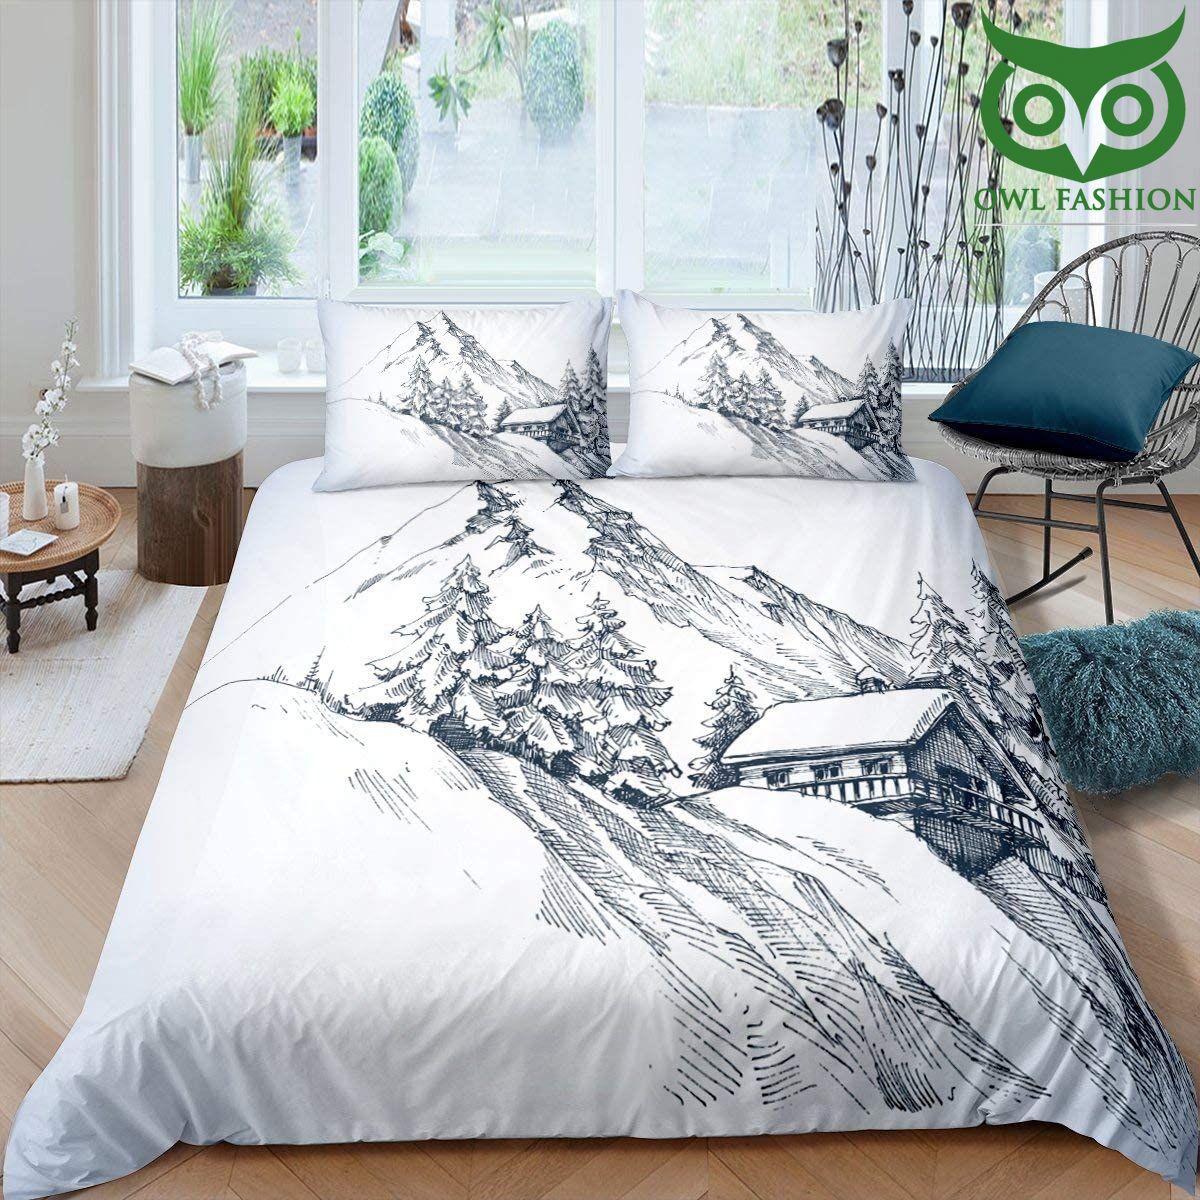 Snow mountain bedding set Snow Mountain Black White Simple Sketch Drawing